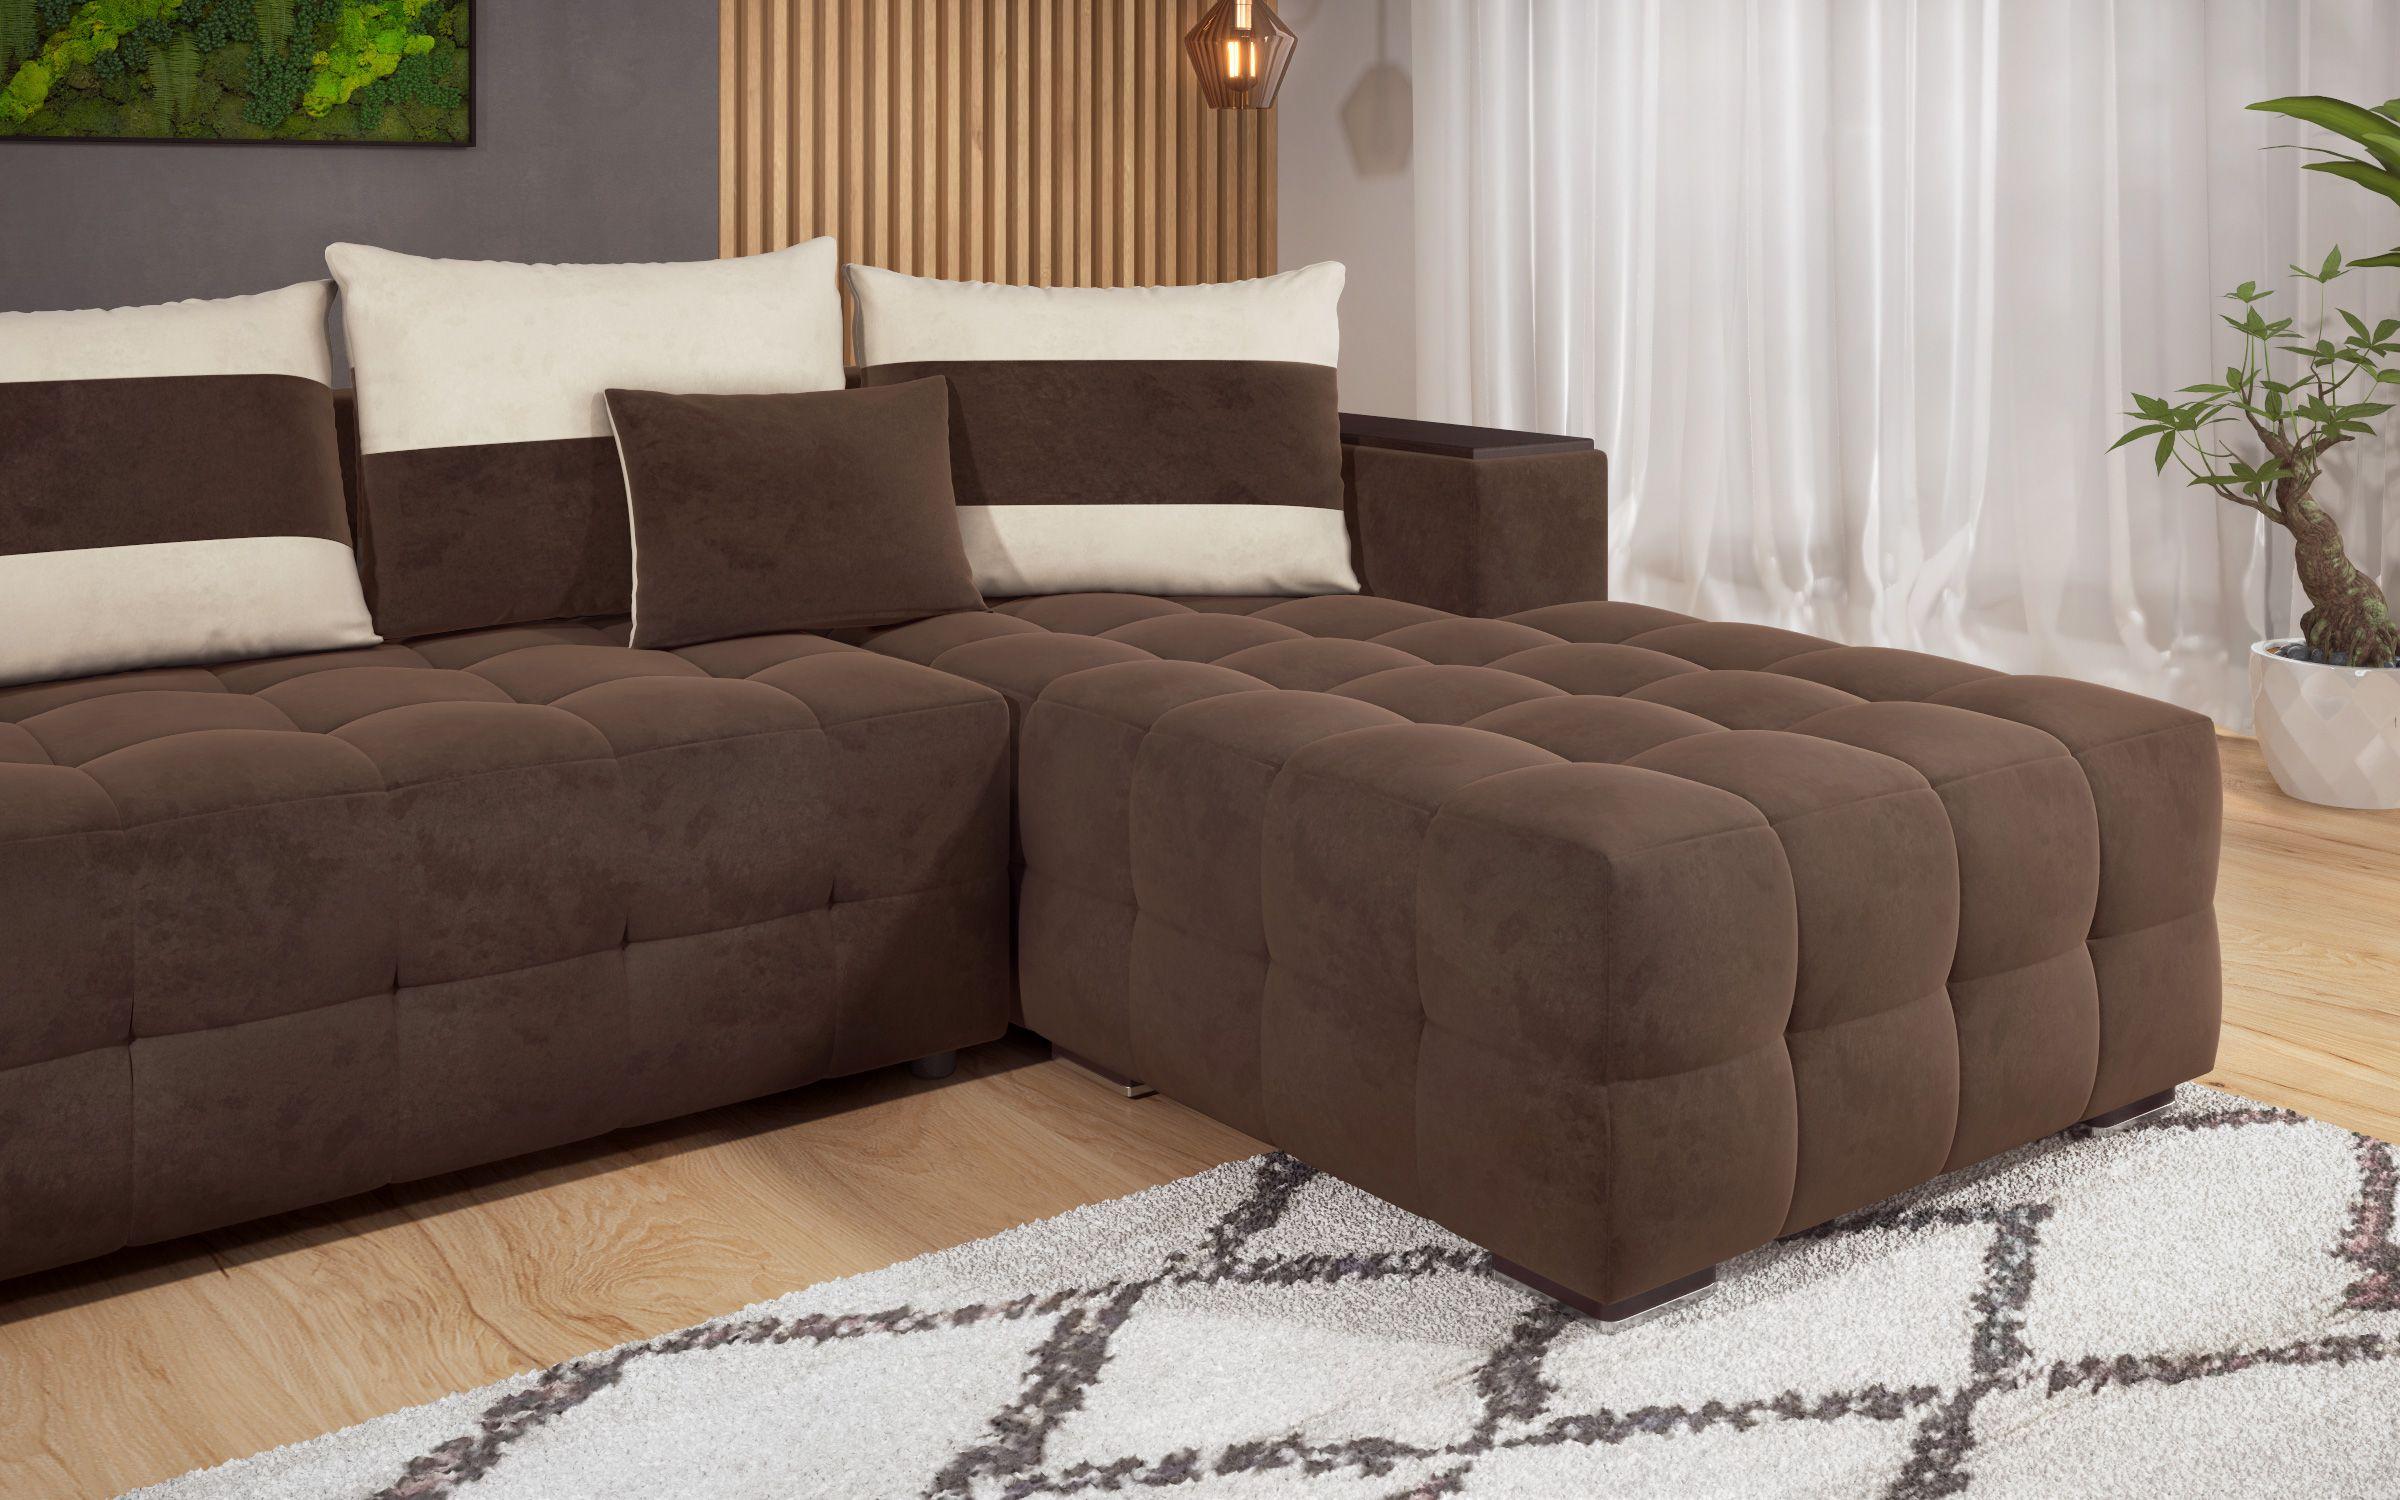 Γωνιακός καναπές - κρεβάτι με ανάκλιντρο και μπράτσο μίνι ραφιέρα Melvin, σκούρο καφέ + ανοιχτό μπεζ  5